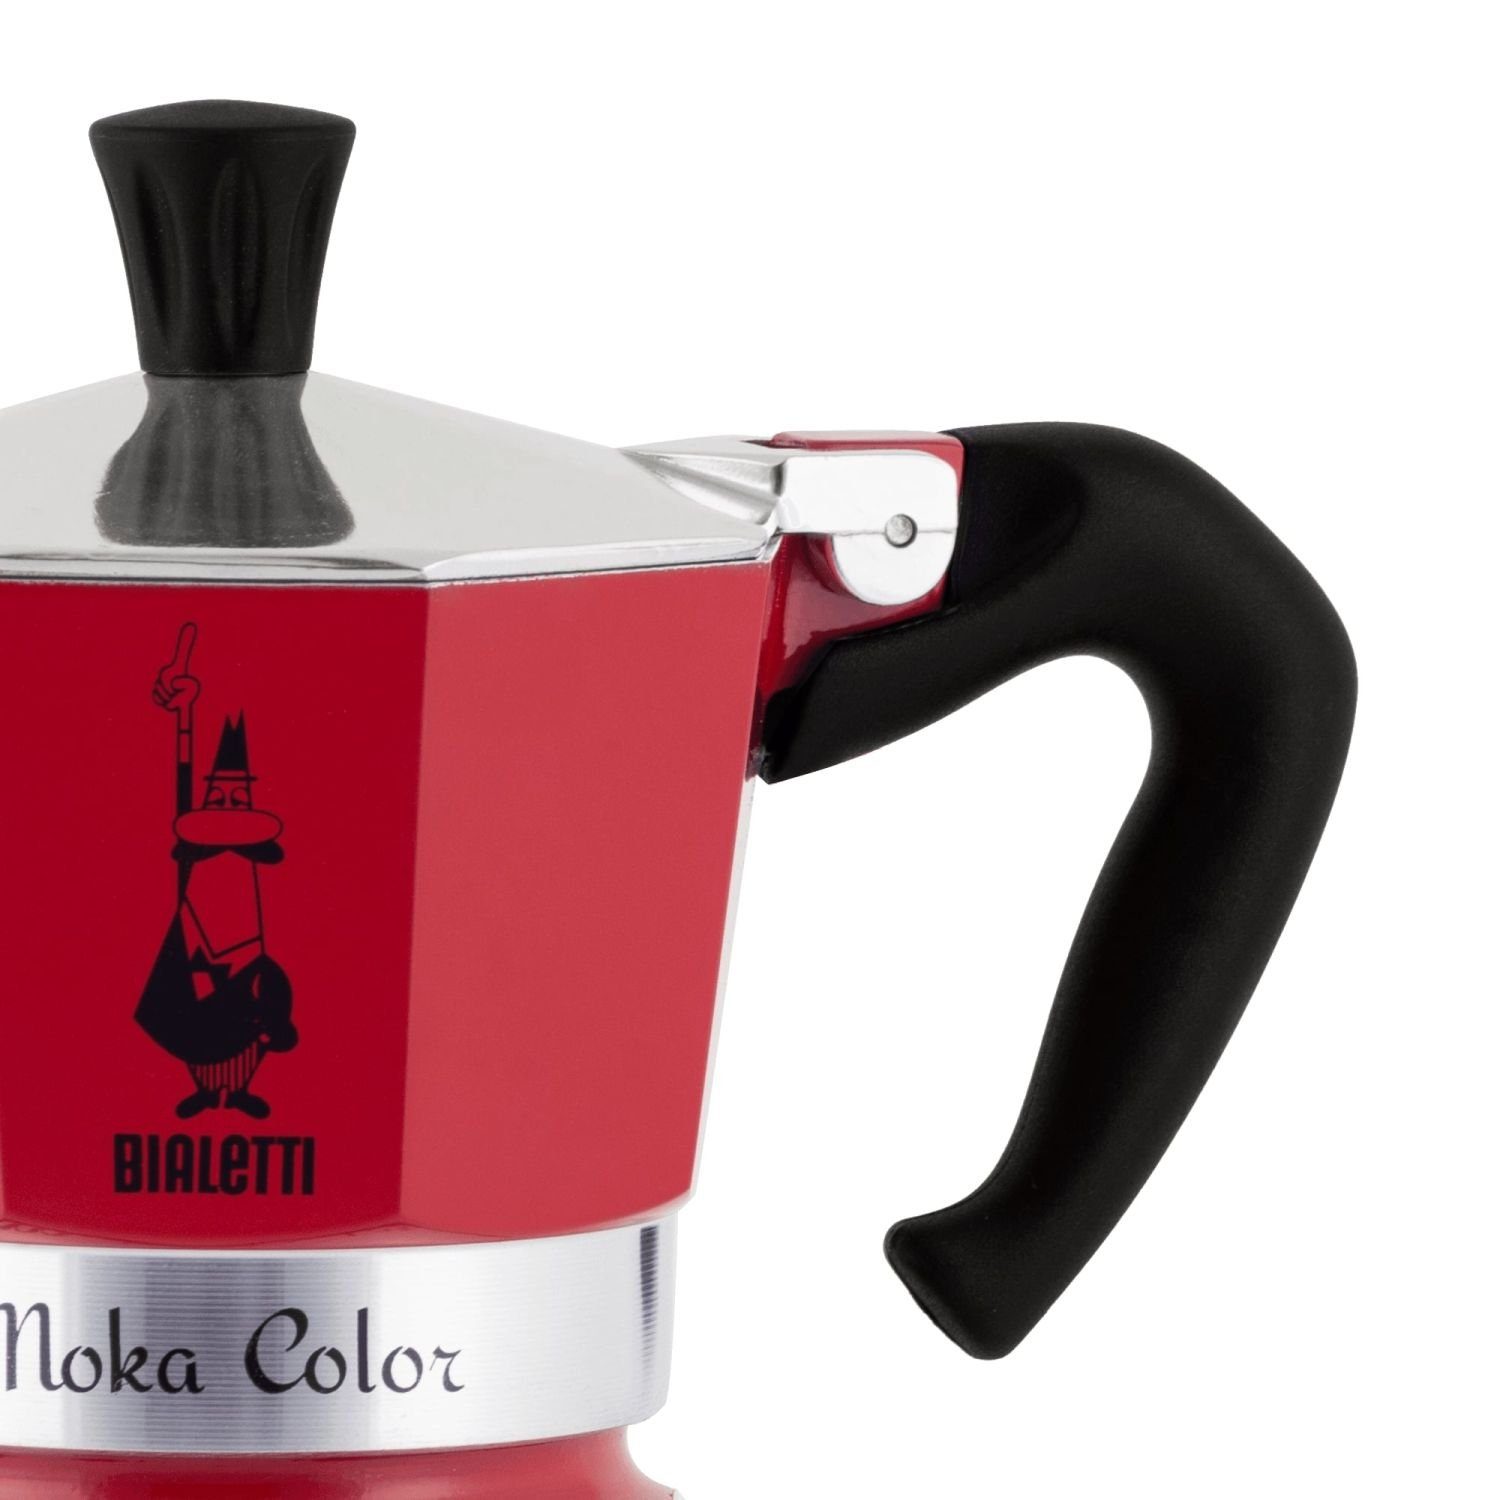 Espressokocher Rot 0,13l Color für Moka Tassen, Express Kaffeekanne 3 BIALETTI